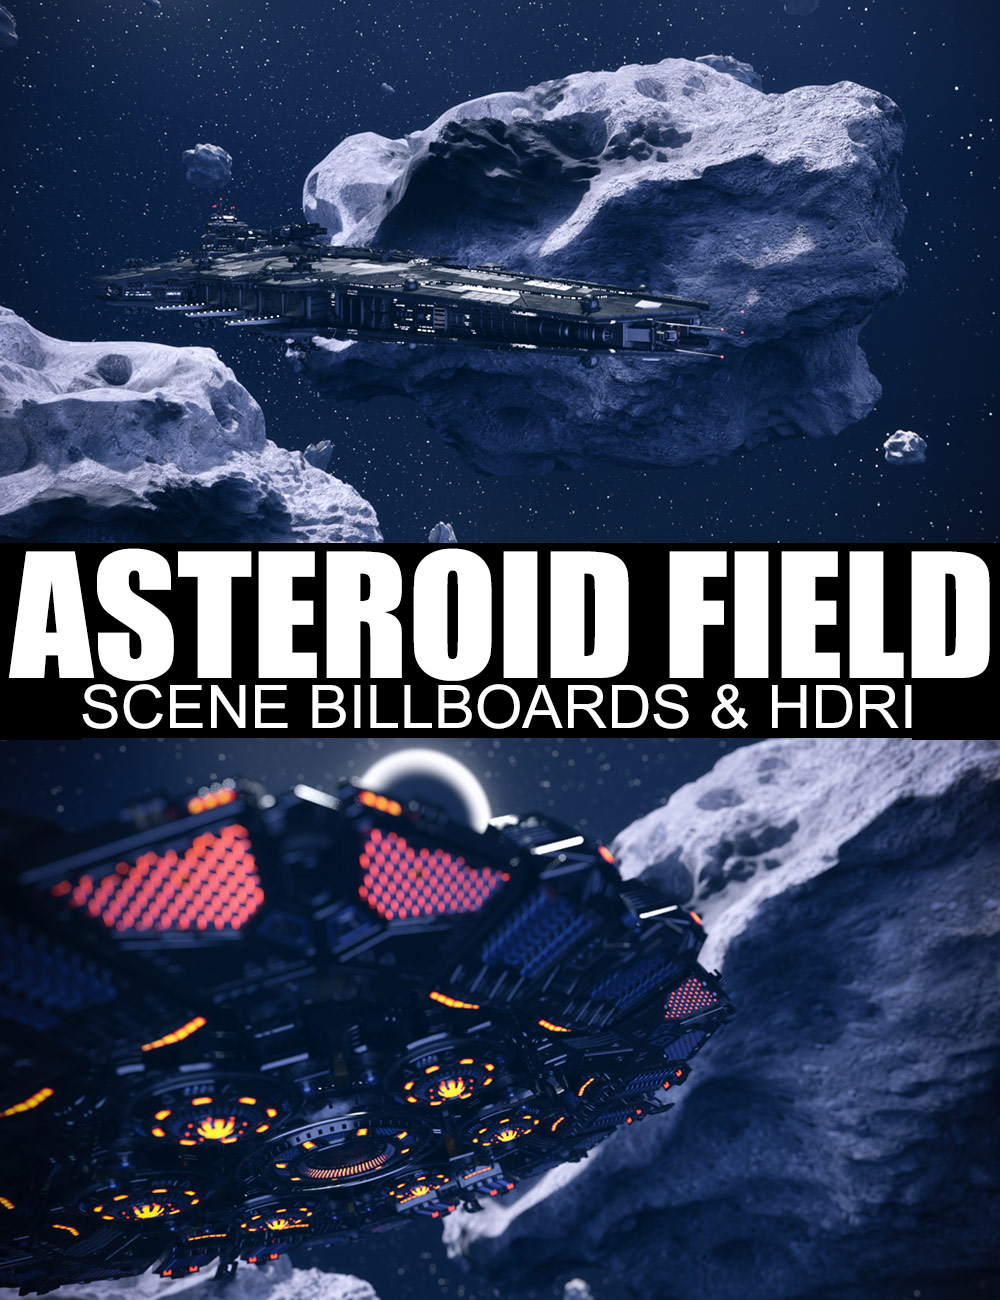 Asteroid Field Scene Billboards and HDRI by: Dreamlight, 3D Models by Daz 3D